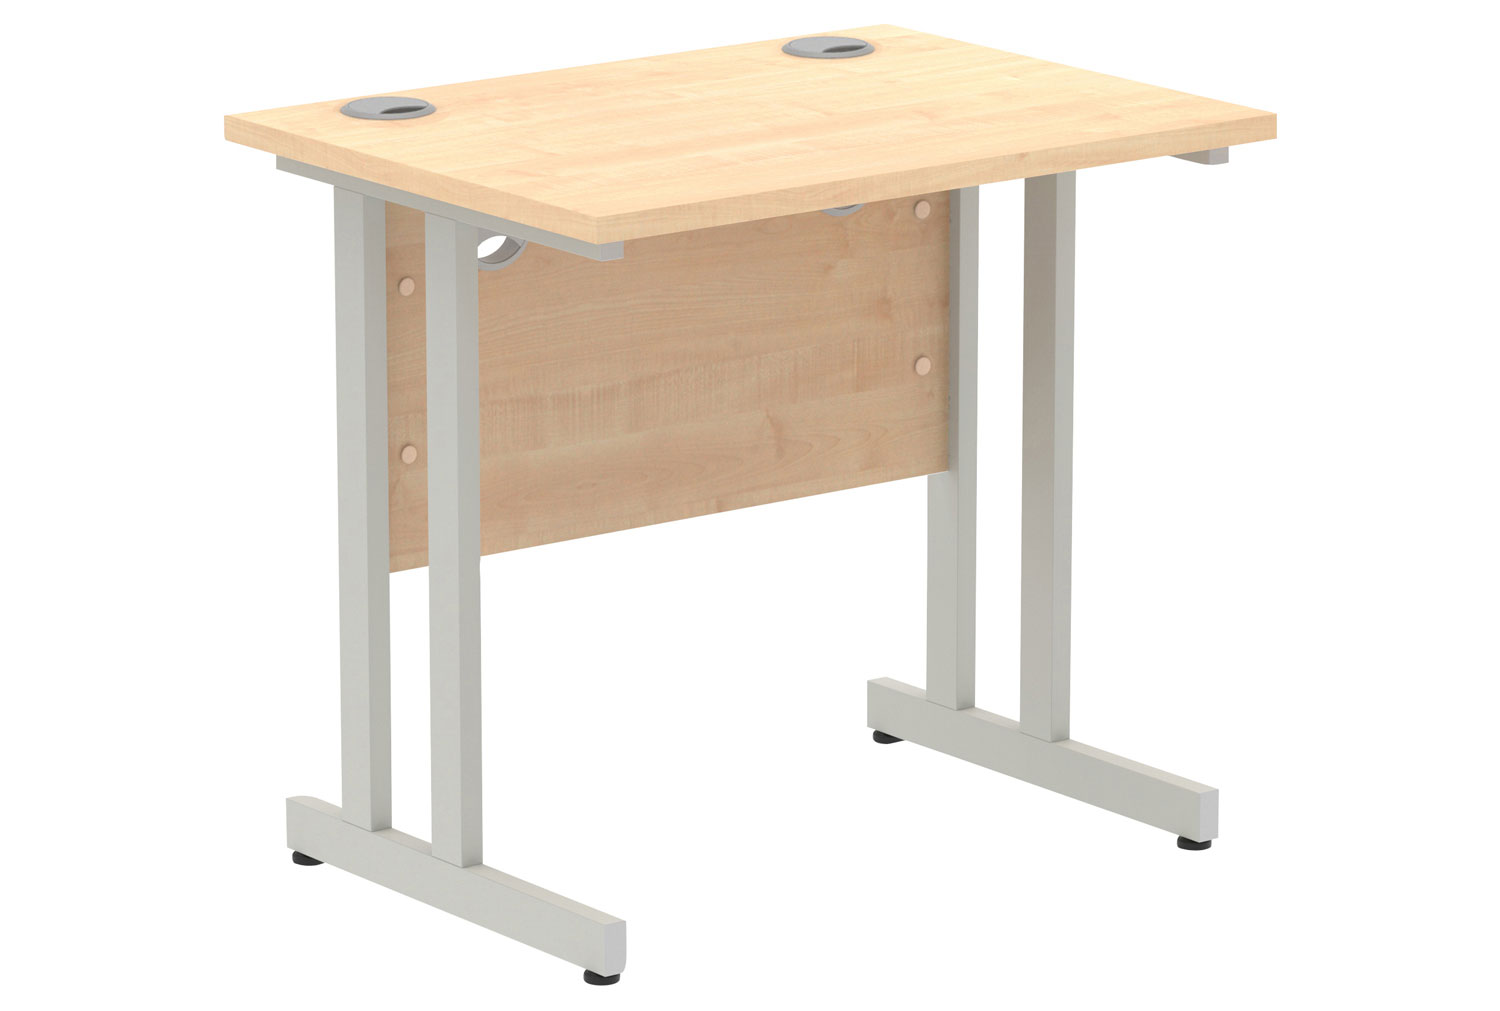 All Maple Narrow C-Leg Rectangular Office Desk, 80wx60dx73h (cm), Silver Frame